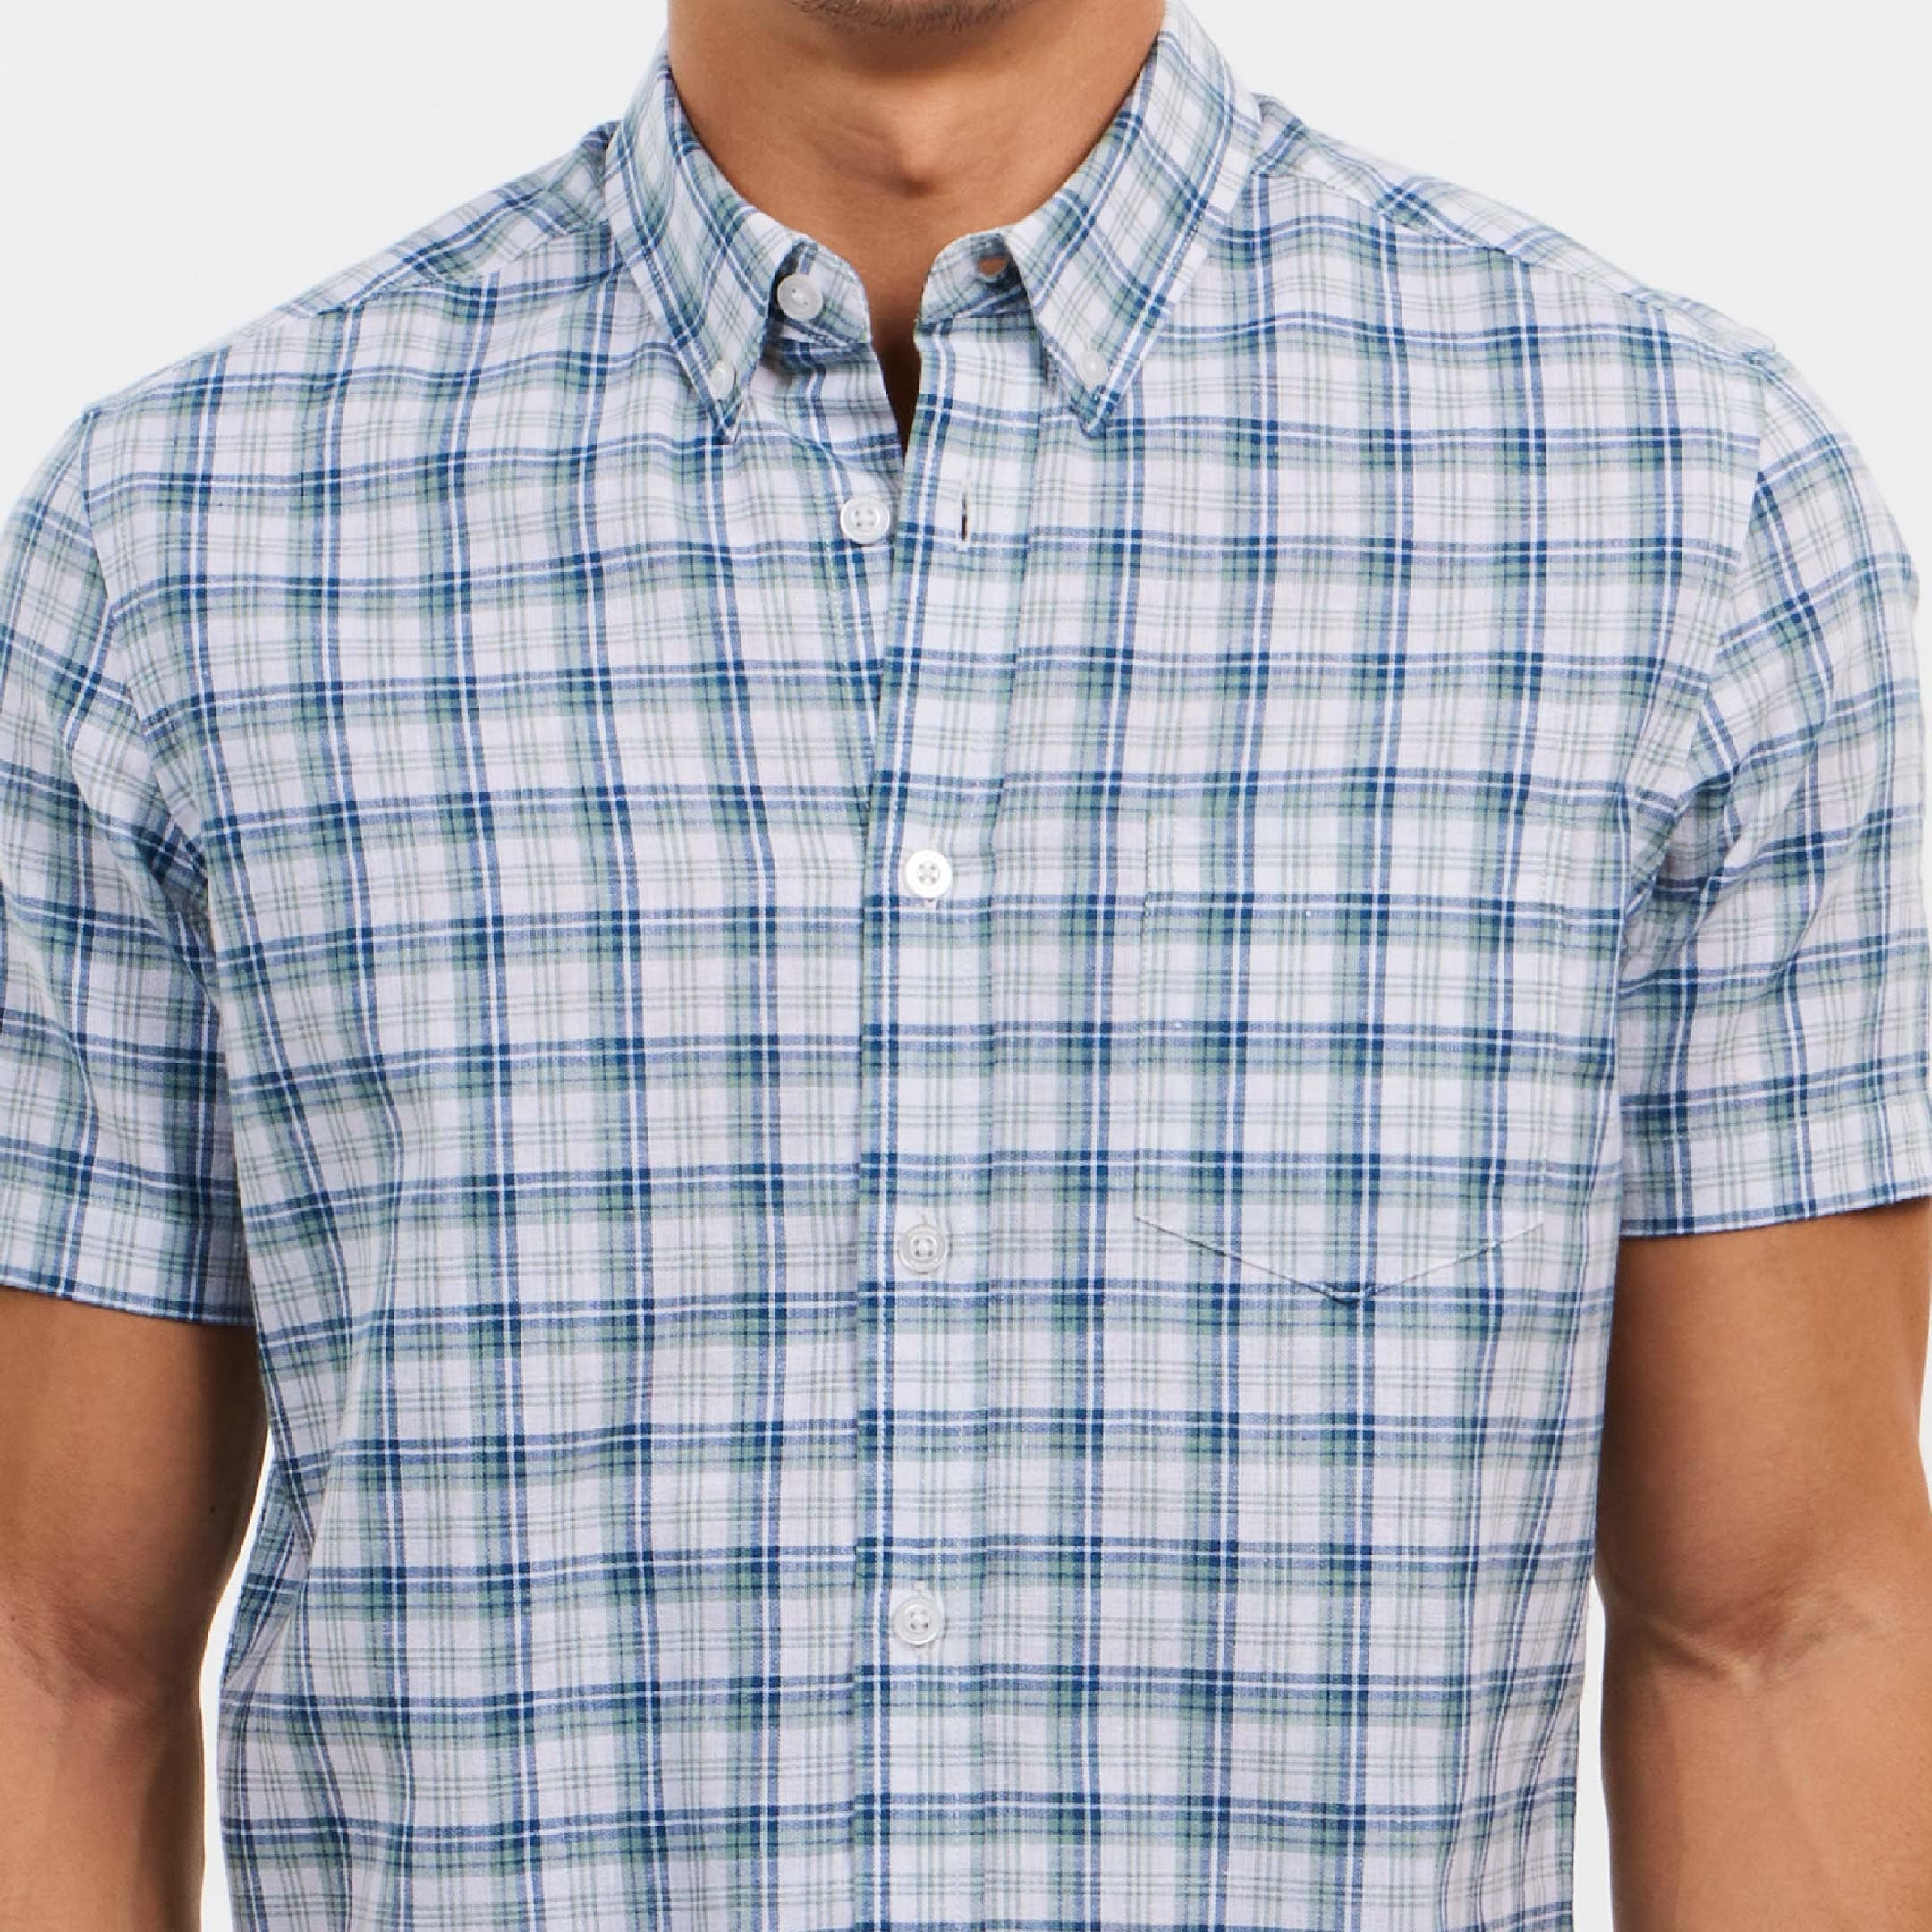 Ash & Erie Riverfront Linen Everyday Short Sleeve Shirt for Short Men   Short Sleeve Everyday Shirts